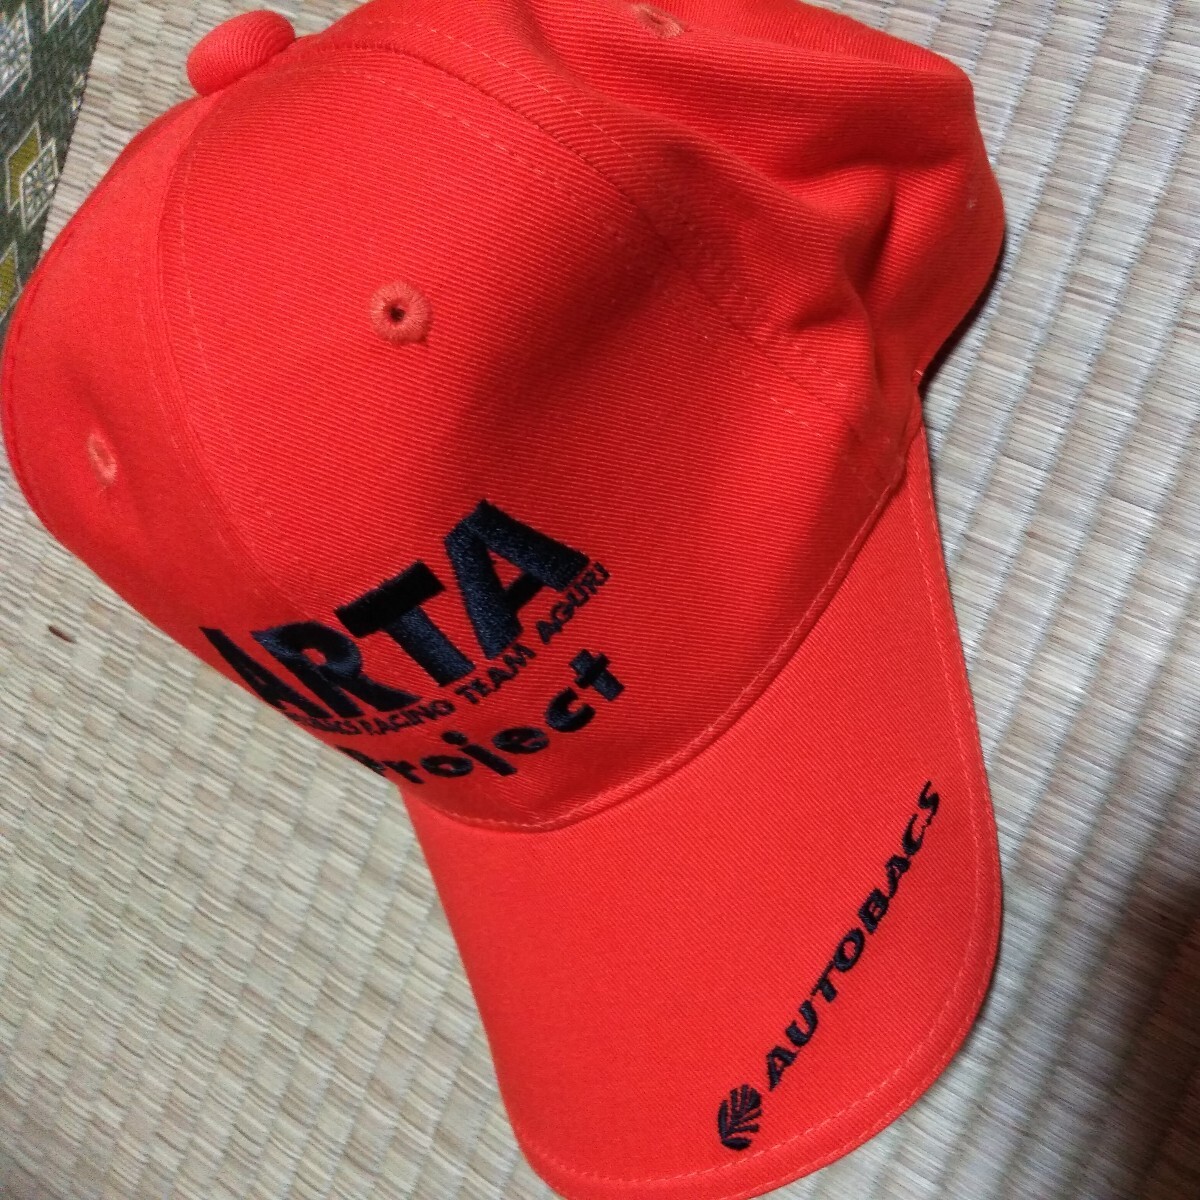 スーパーGT オートバックスARTA 支給品ピットシャツ & 帽子のセット レース観戦にいかが!の画像6